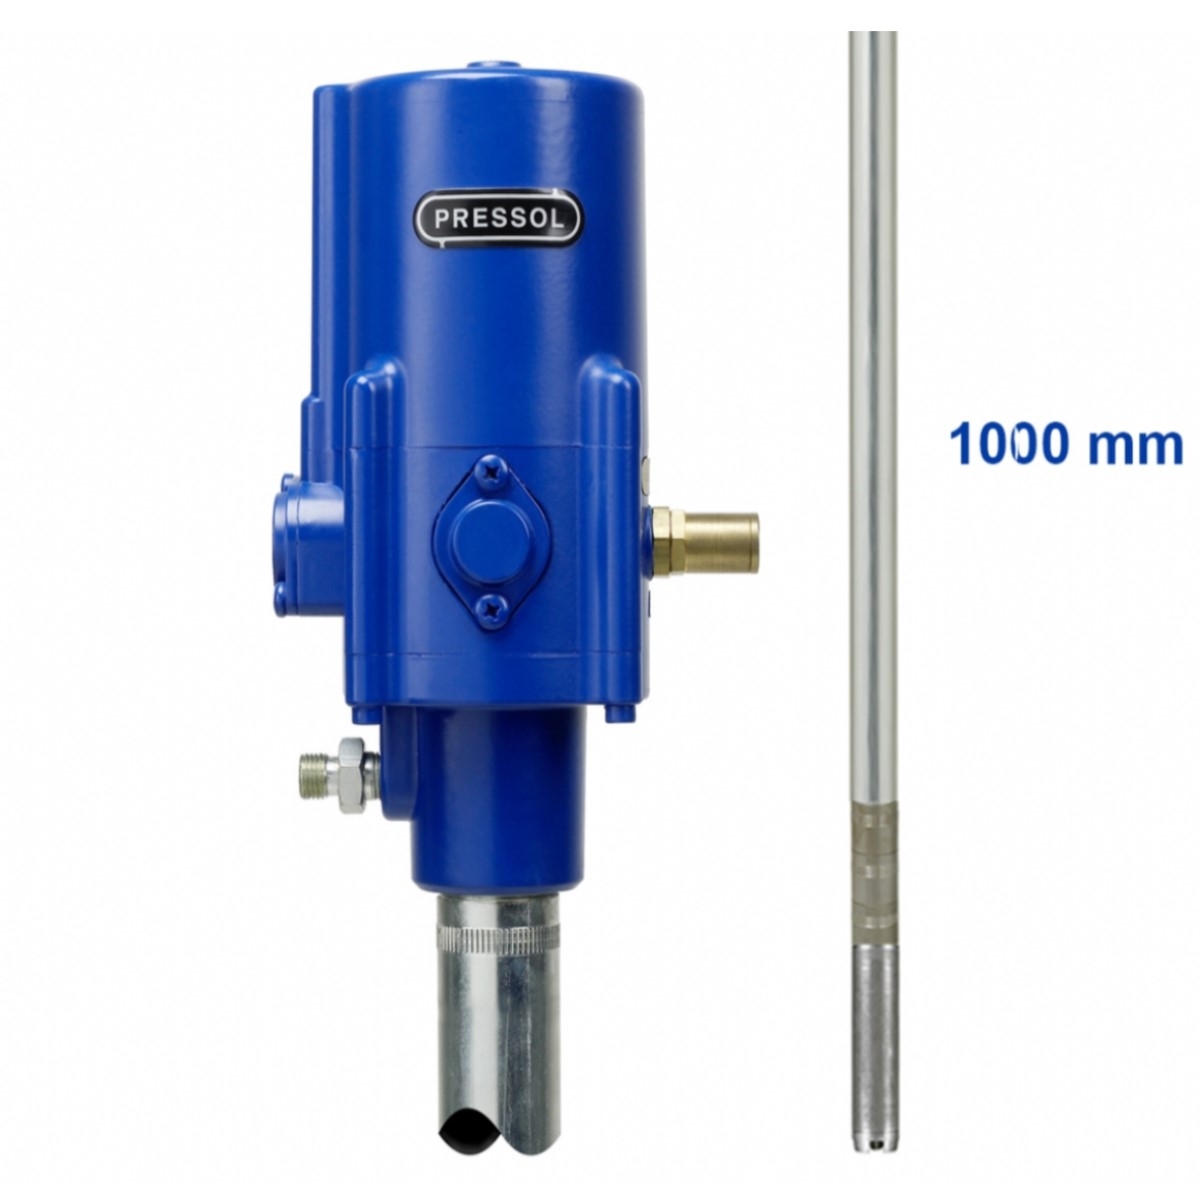 Pressol Pneumatic Grease Pump 15:1 1000 mm